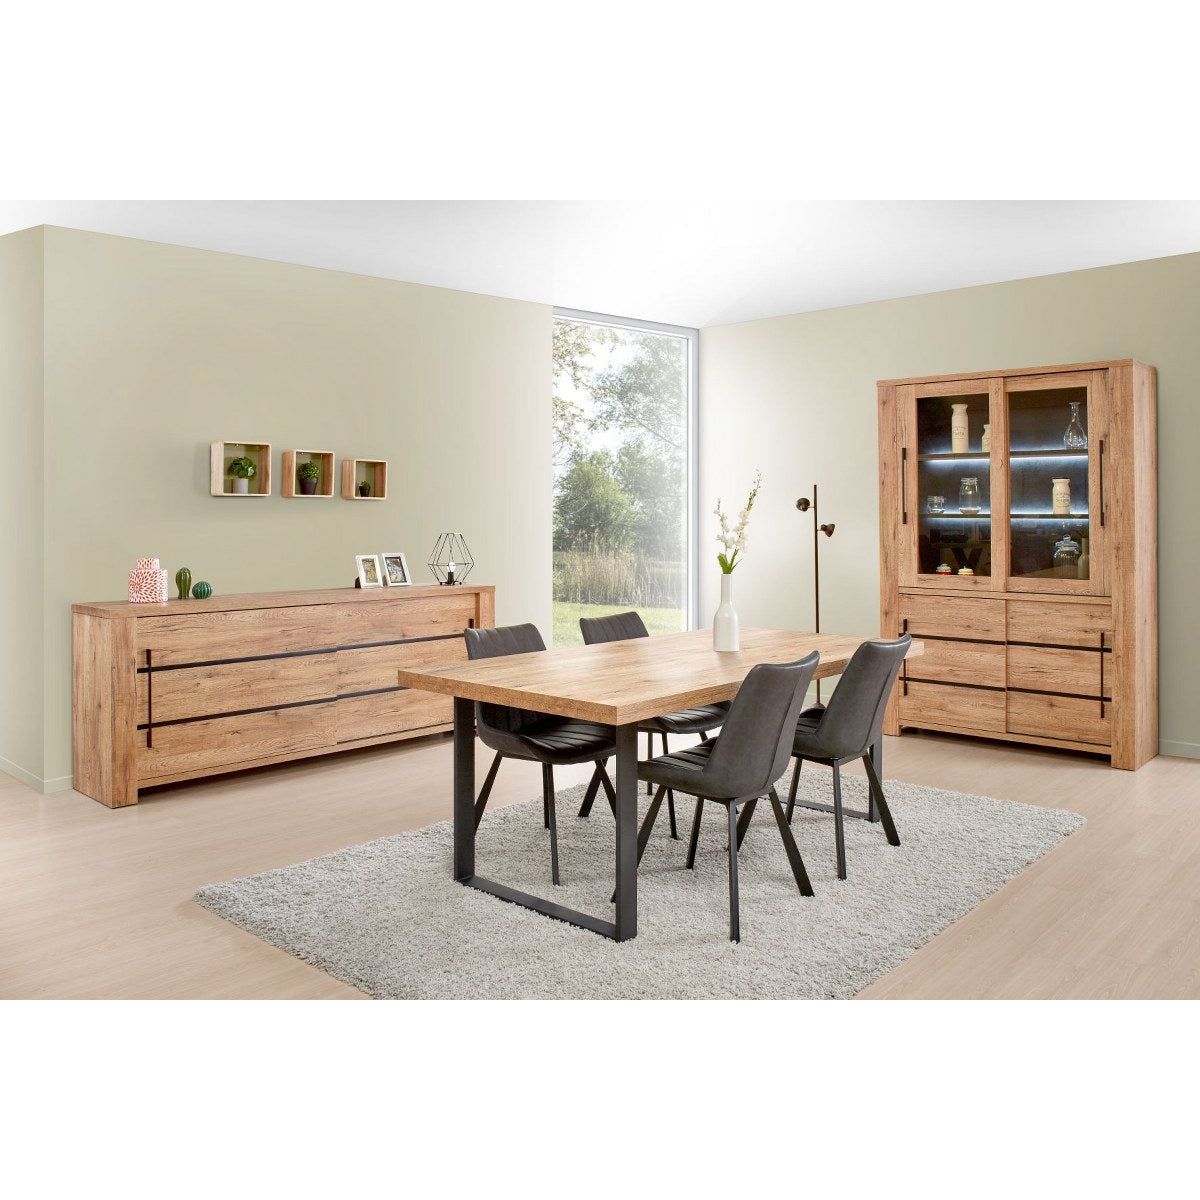 Dresser | Furniture series Basto | brown | 230 x 48 x 89.2 (h)